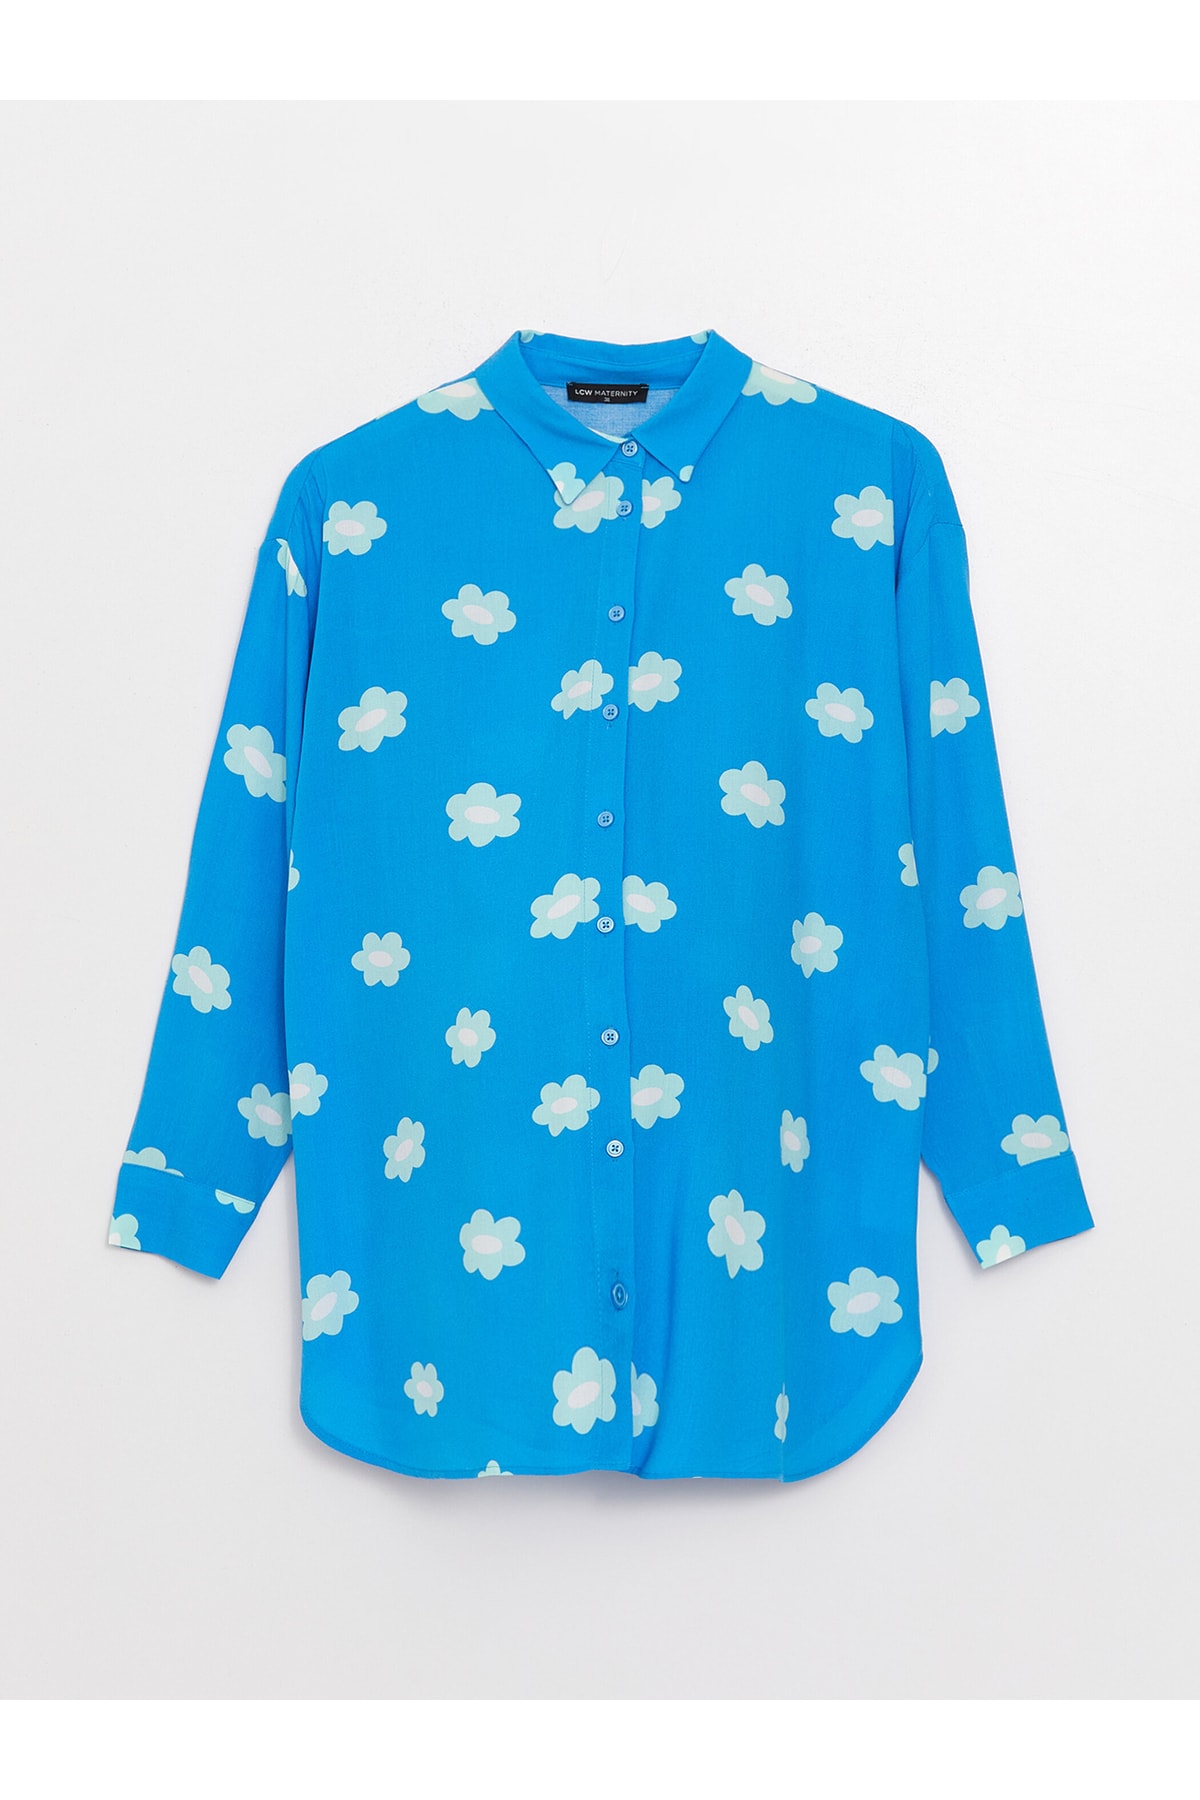 LC Waikiki Shirt Collar Floral Long Sleeve Maternity Tunic